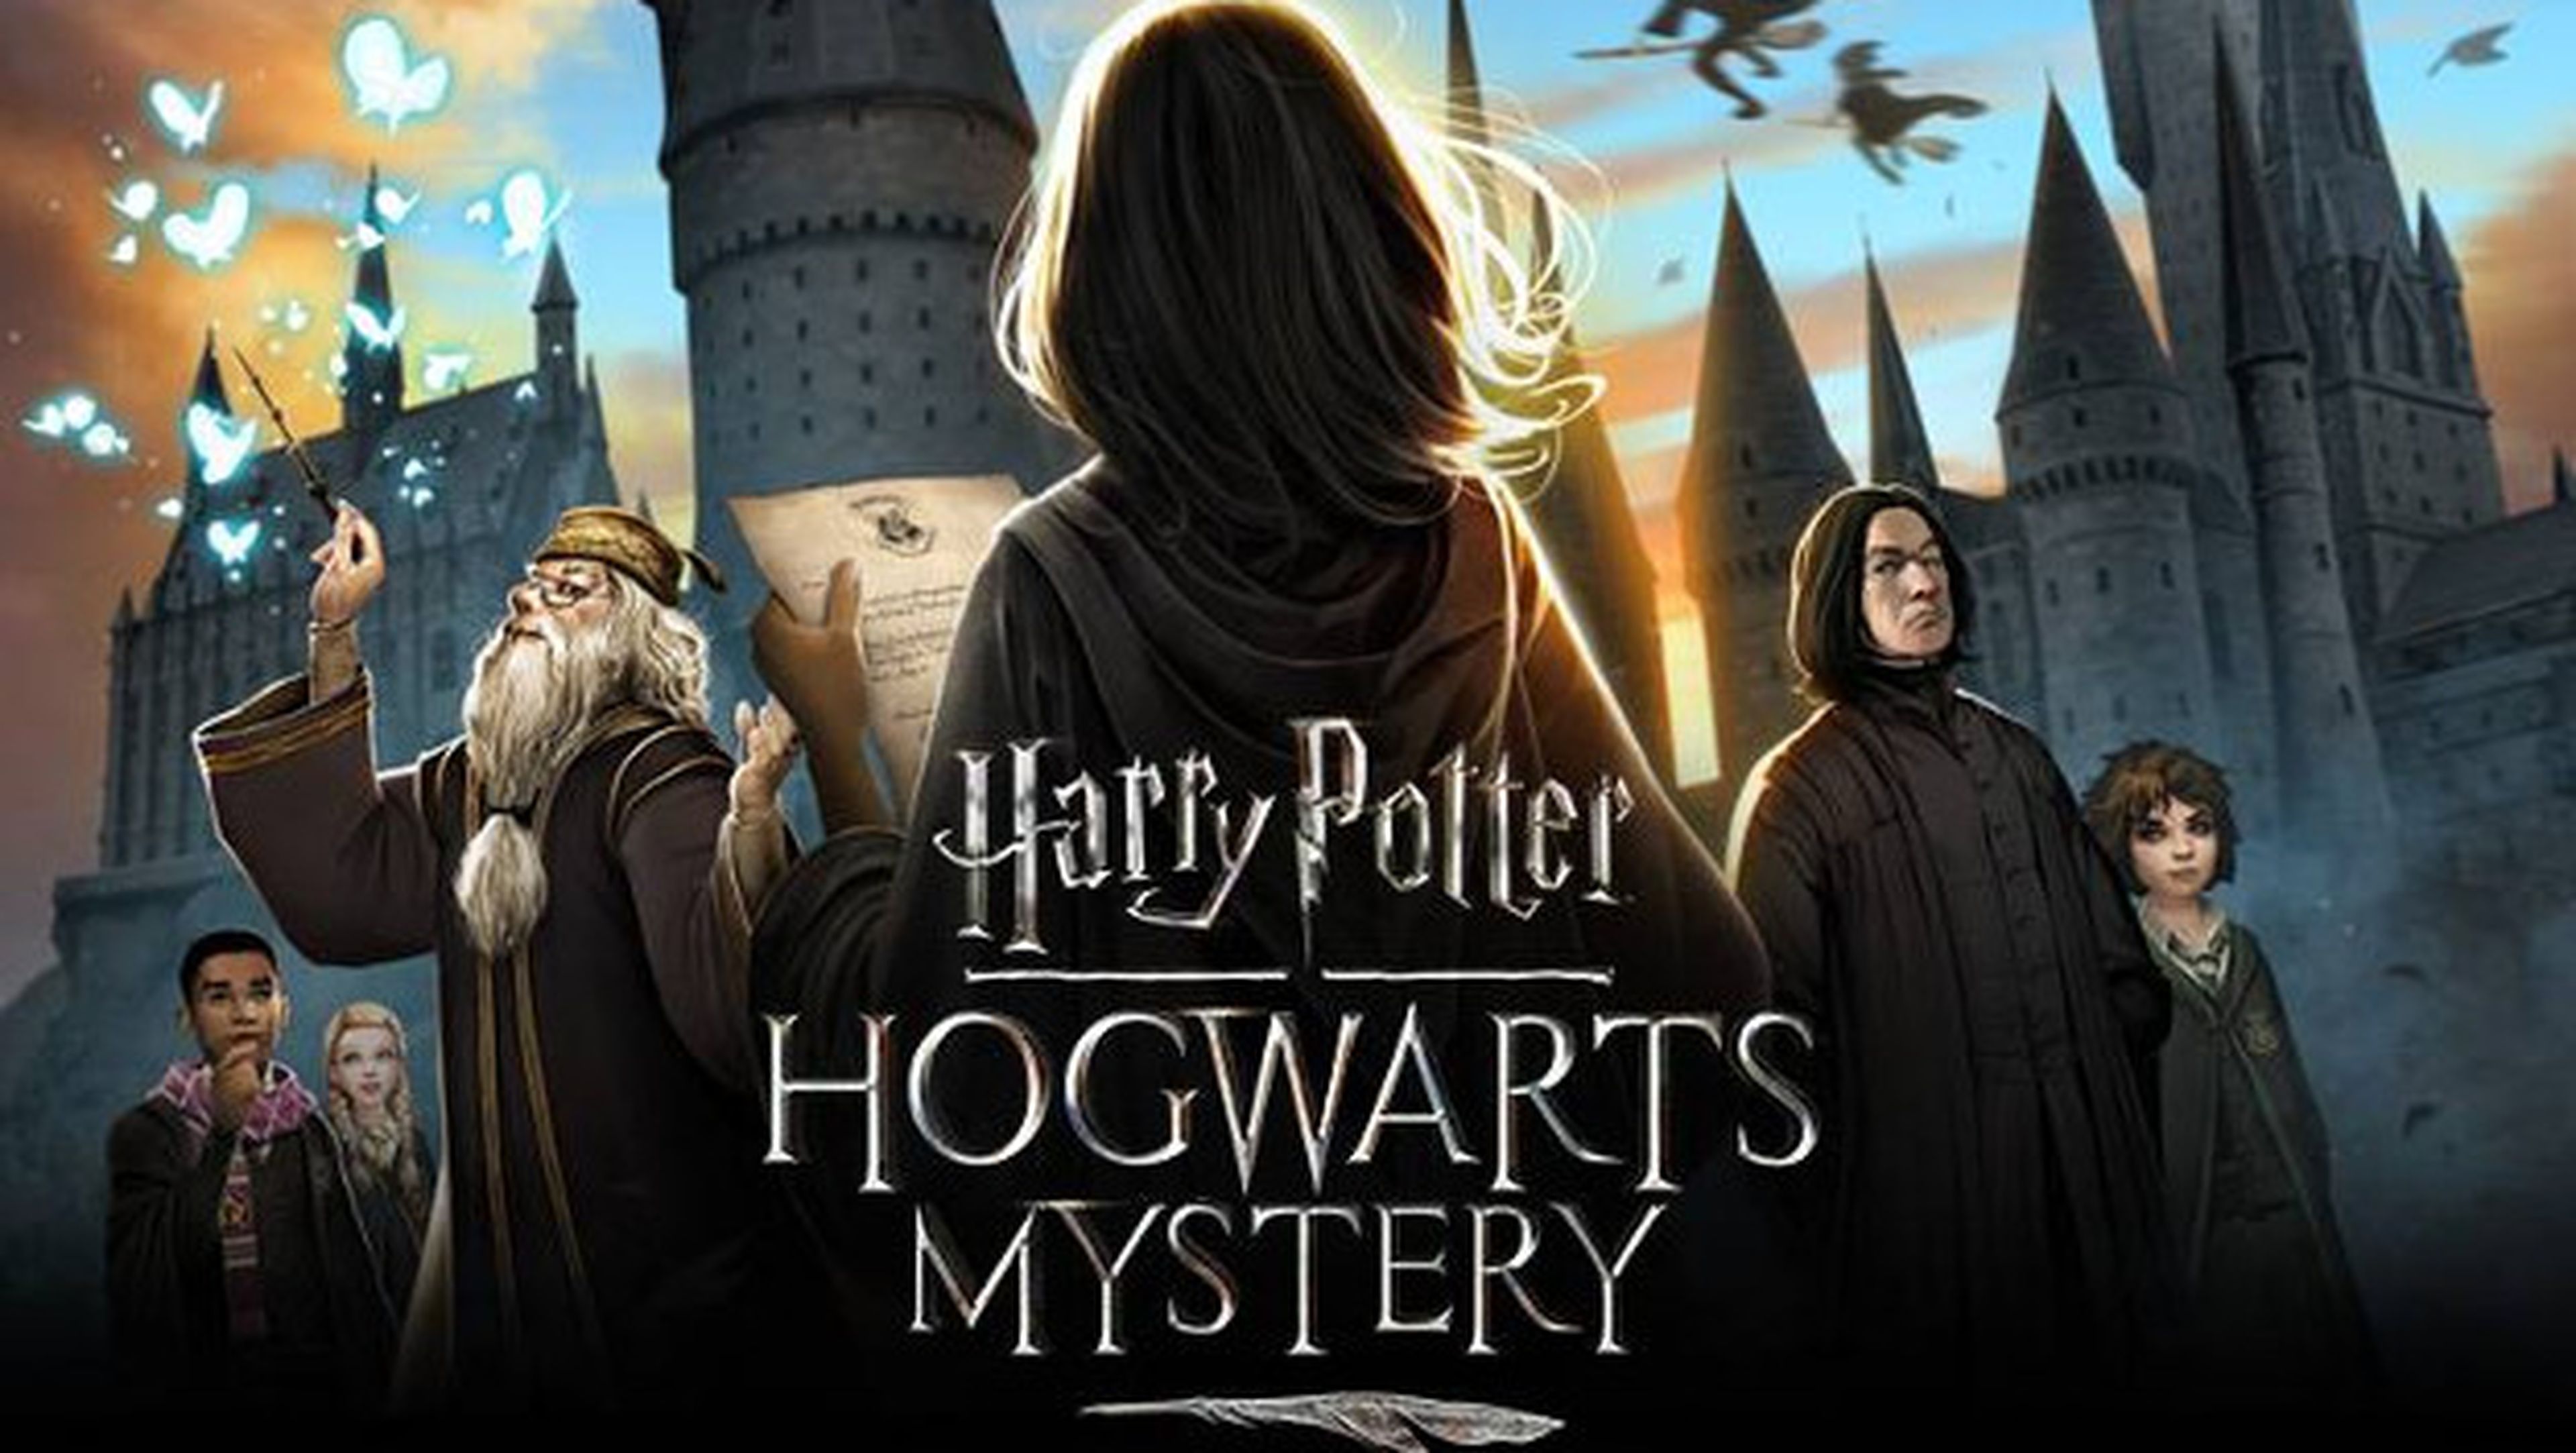 Ya disponible para Android un nuevo juego gratis de Harry Potter para Android.